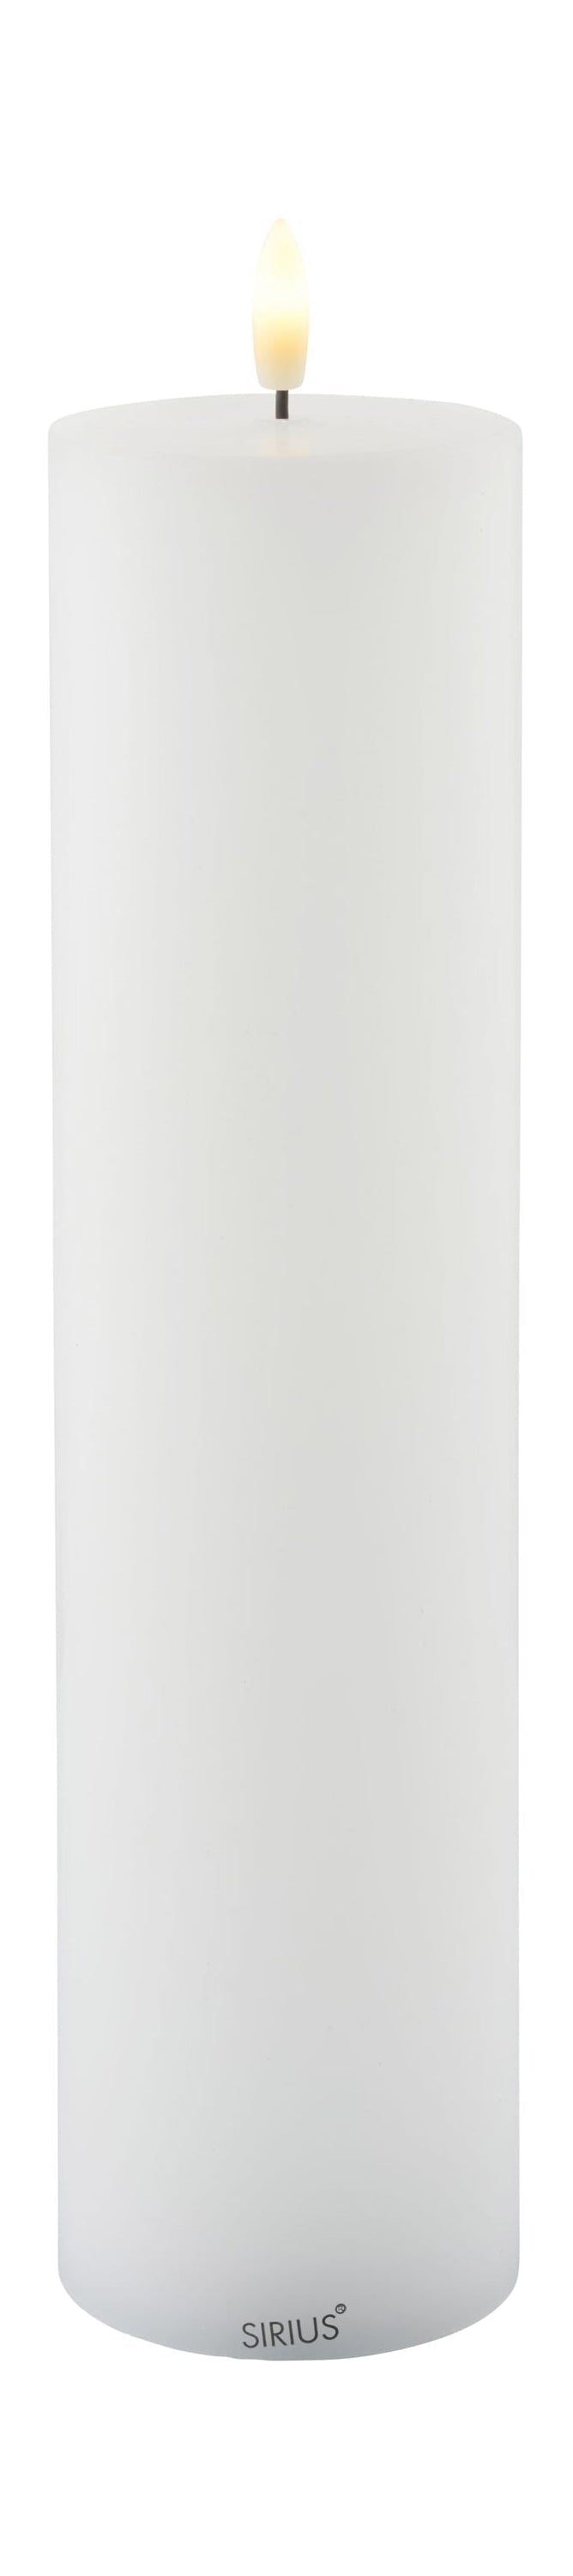 Sirius Sille ladattava LED -kynttilä valkoinen, Ø7,5x H30 cm